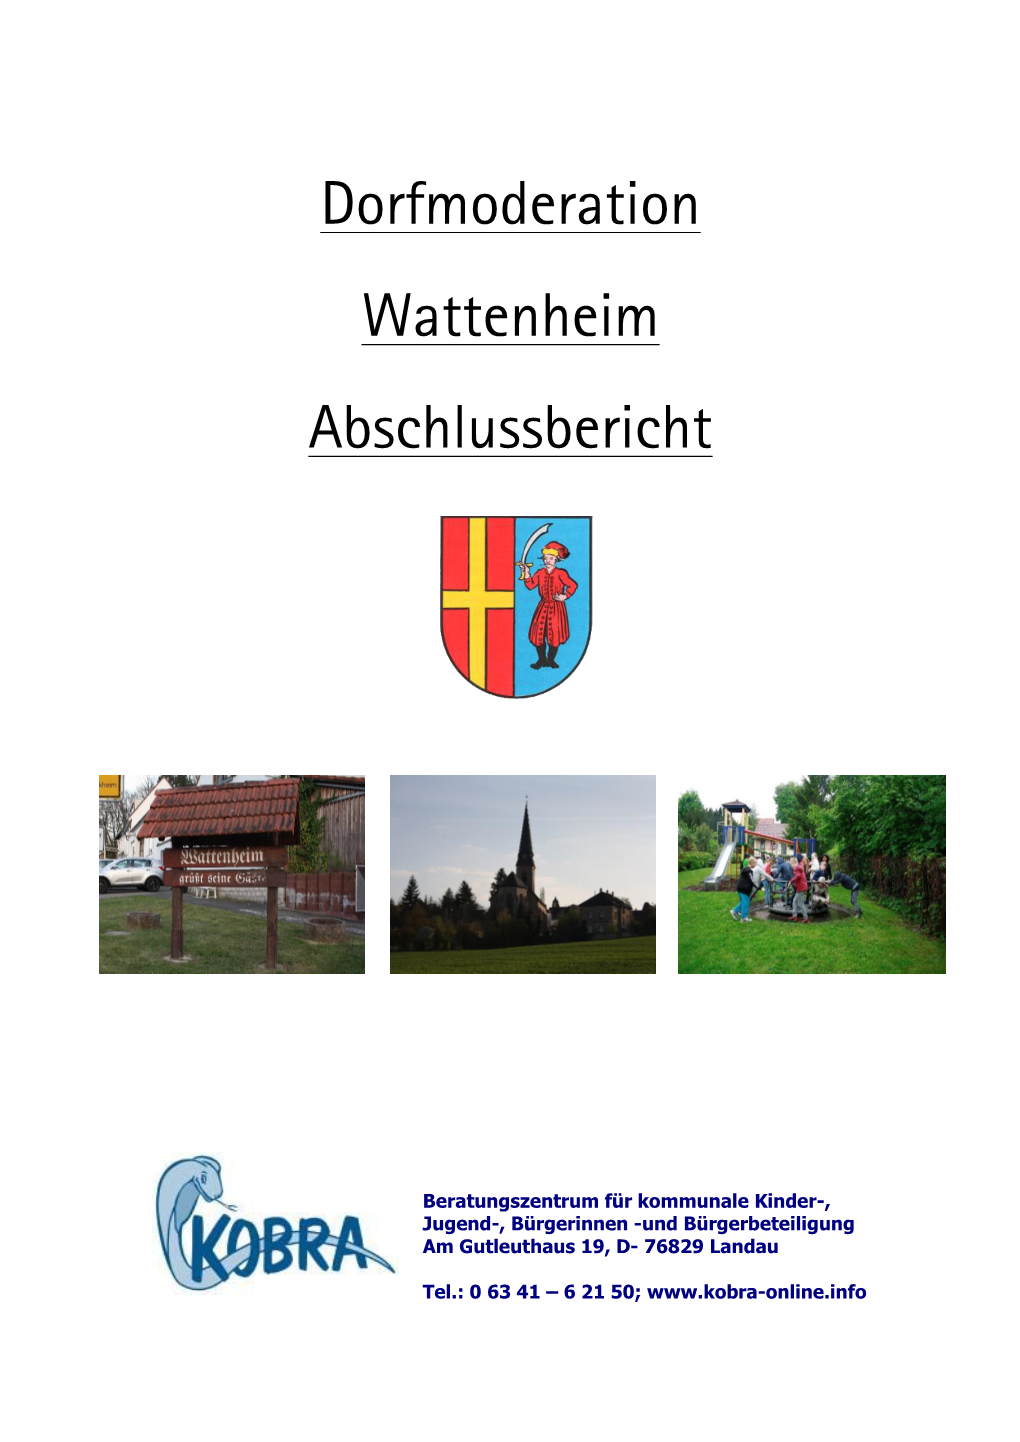 Dorfmoderation Wattenheim Abschlussbericht